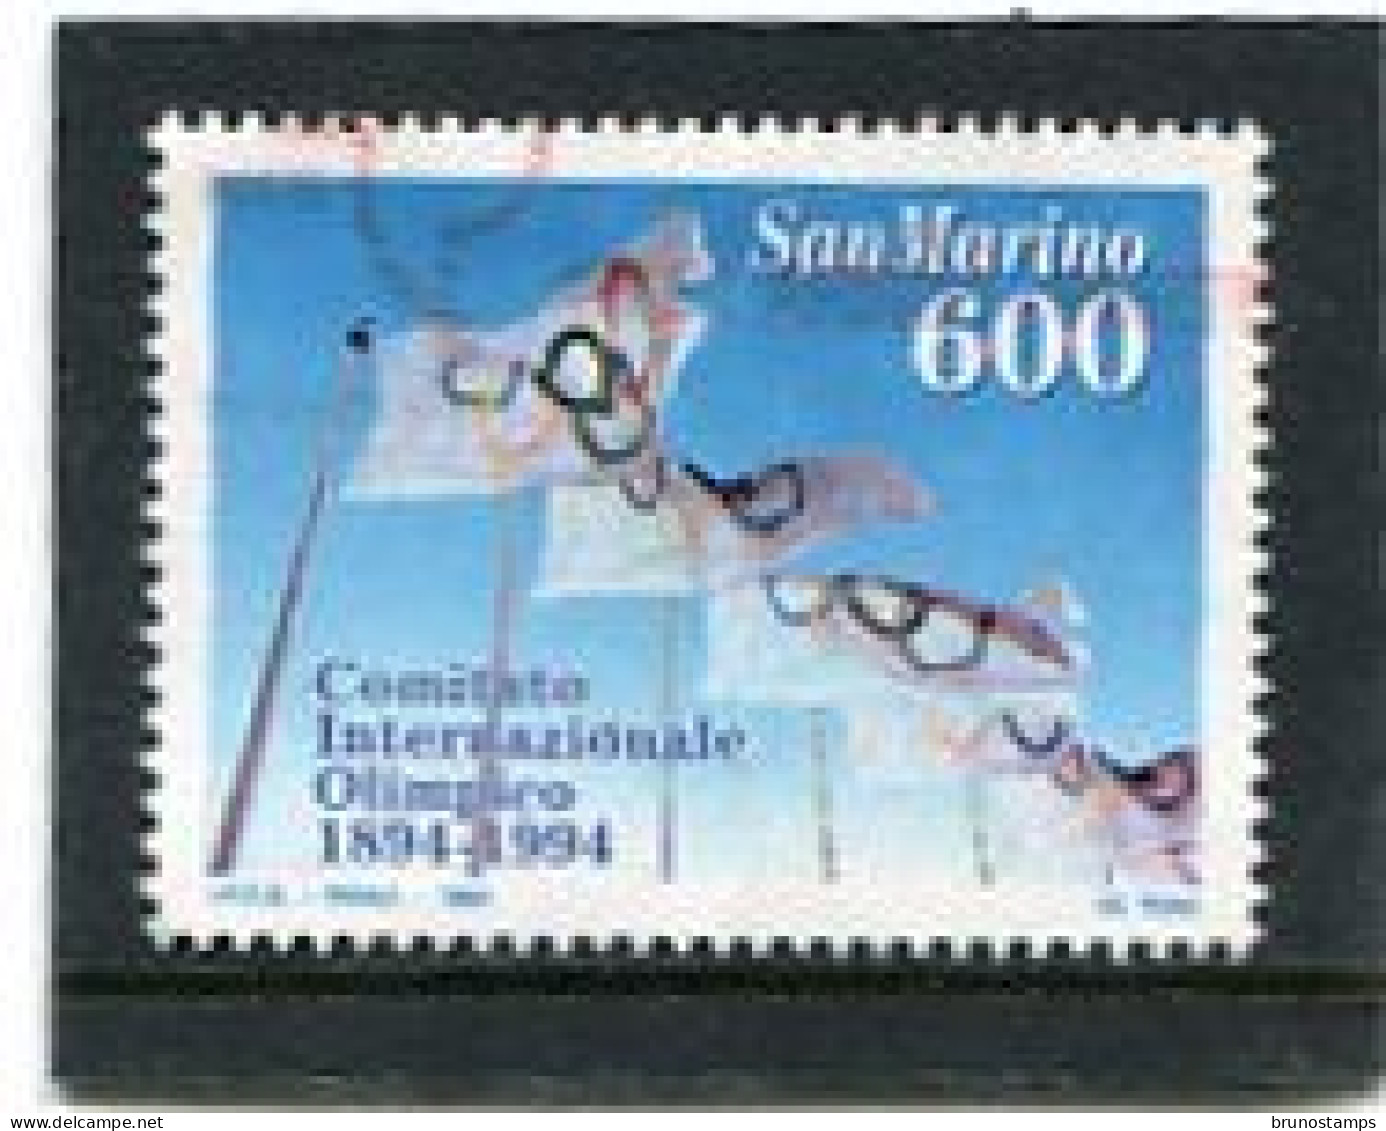 SAN MARINO - 1994  600 L  C.I.O.  CENTENARY  FINE USED - Gebraucht